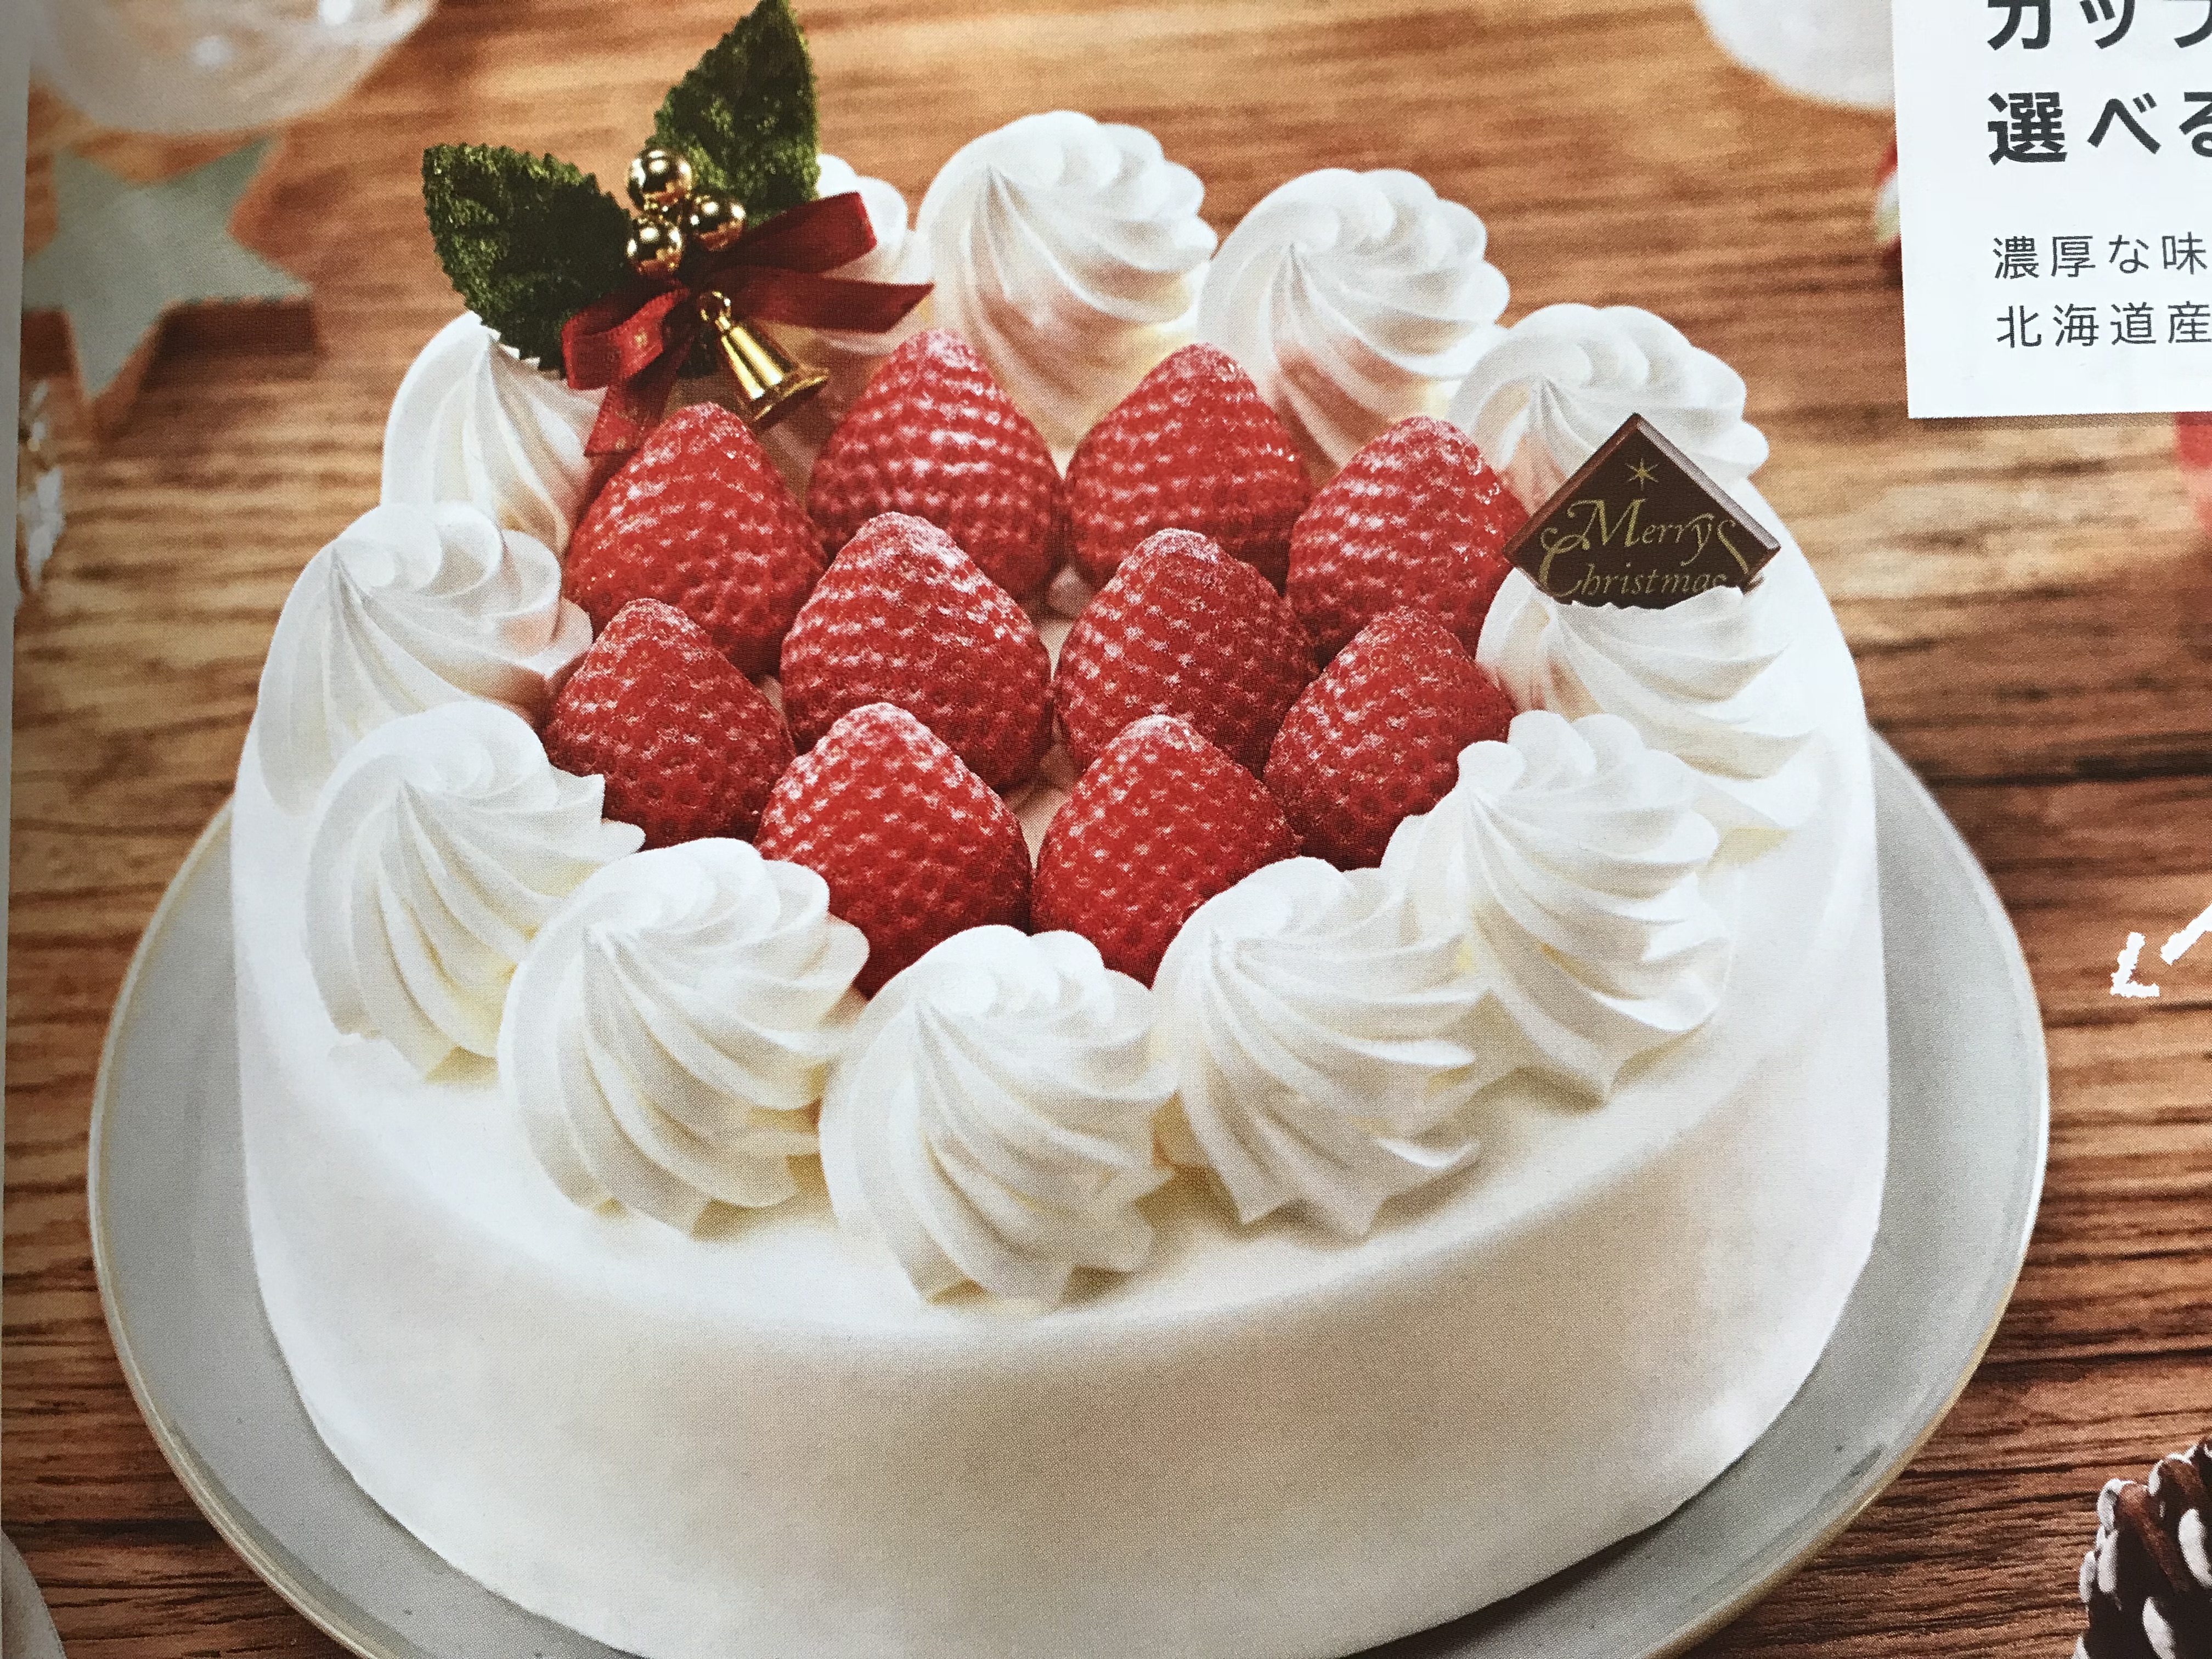 セブンイレブンのクリスマスケーキ18の予約とカタログについて 安室奈美恵ドールも調査 今日を明るく